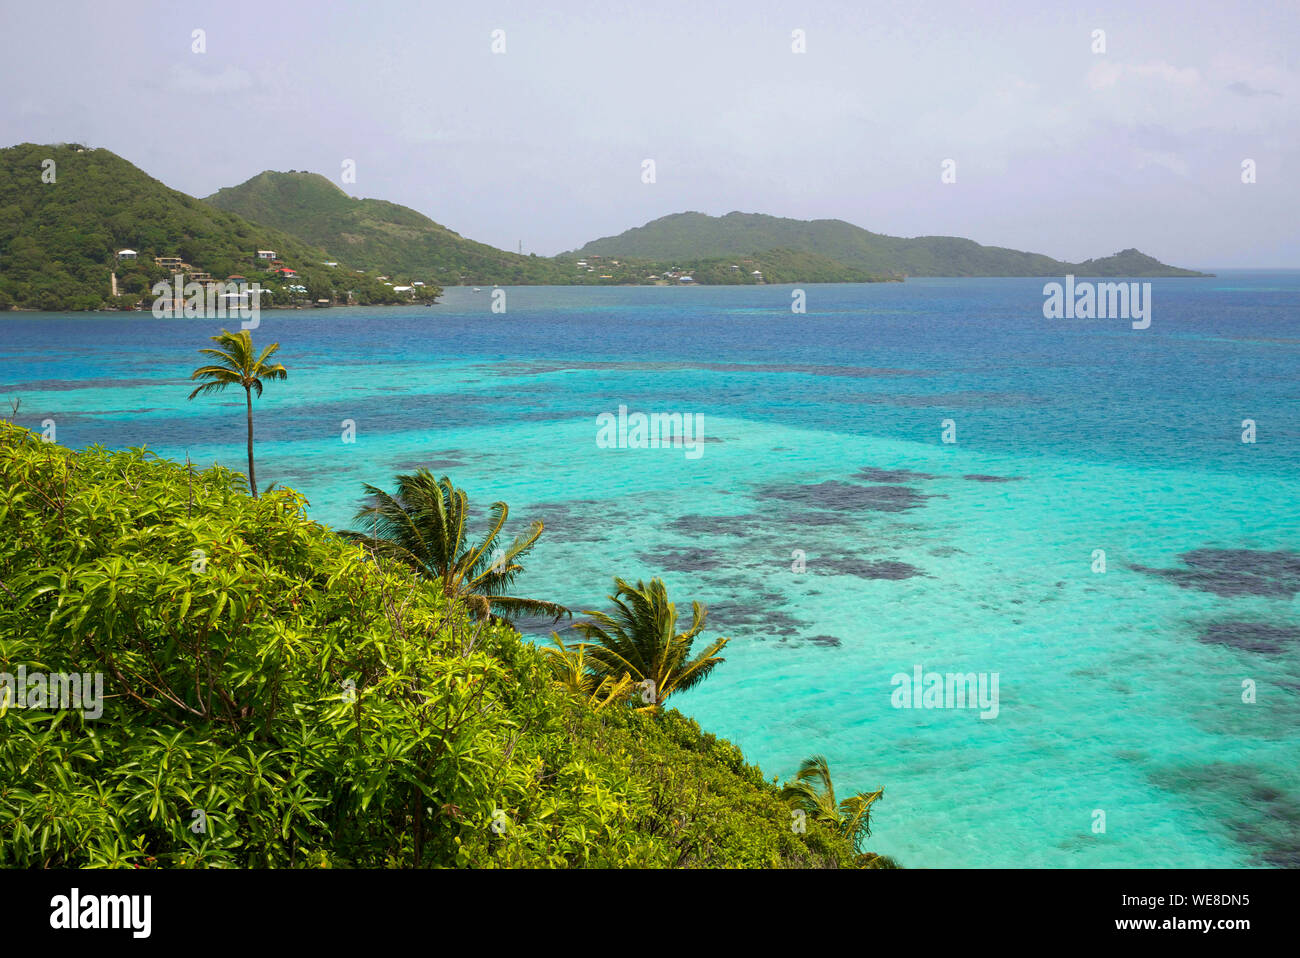 Colombia, Providencia Island, Cayo Cangrejo, islet in the Caribbean Sea Stock Photo